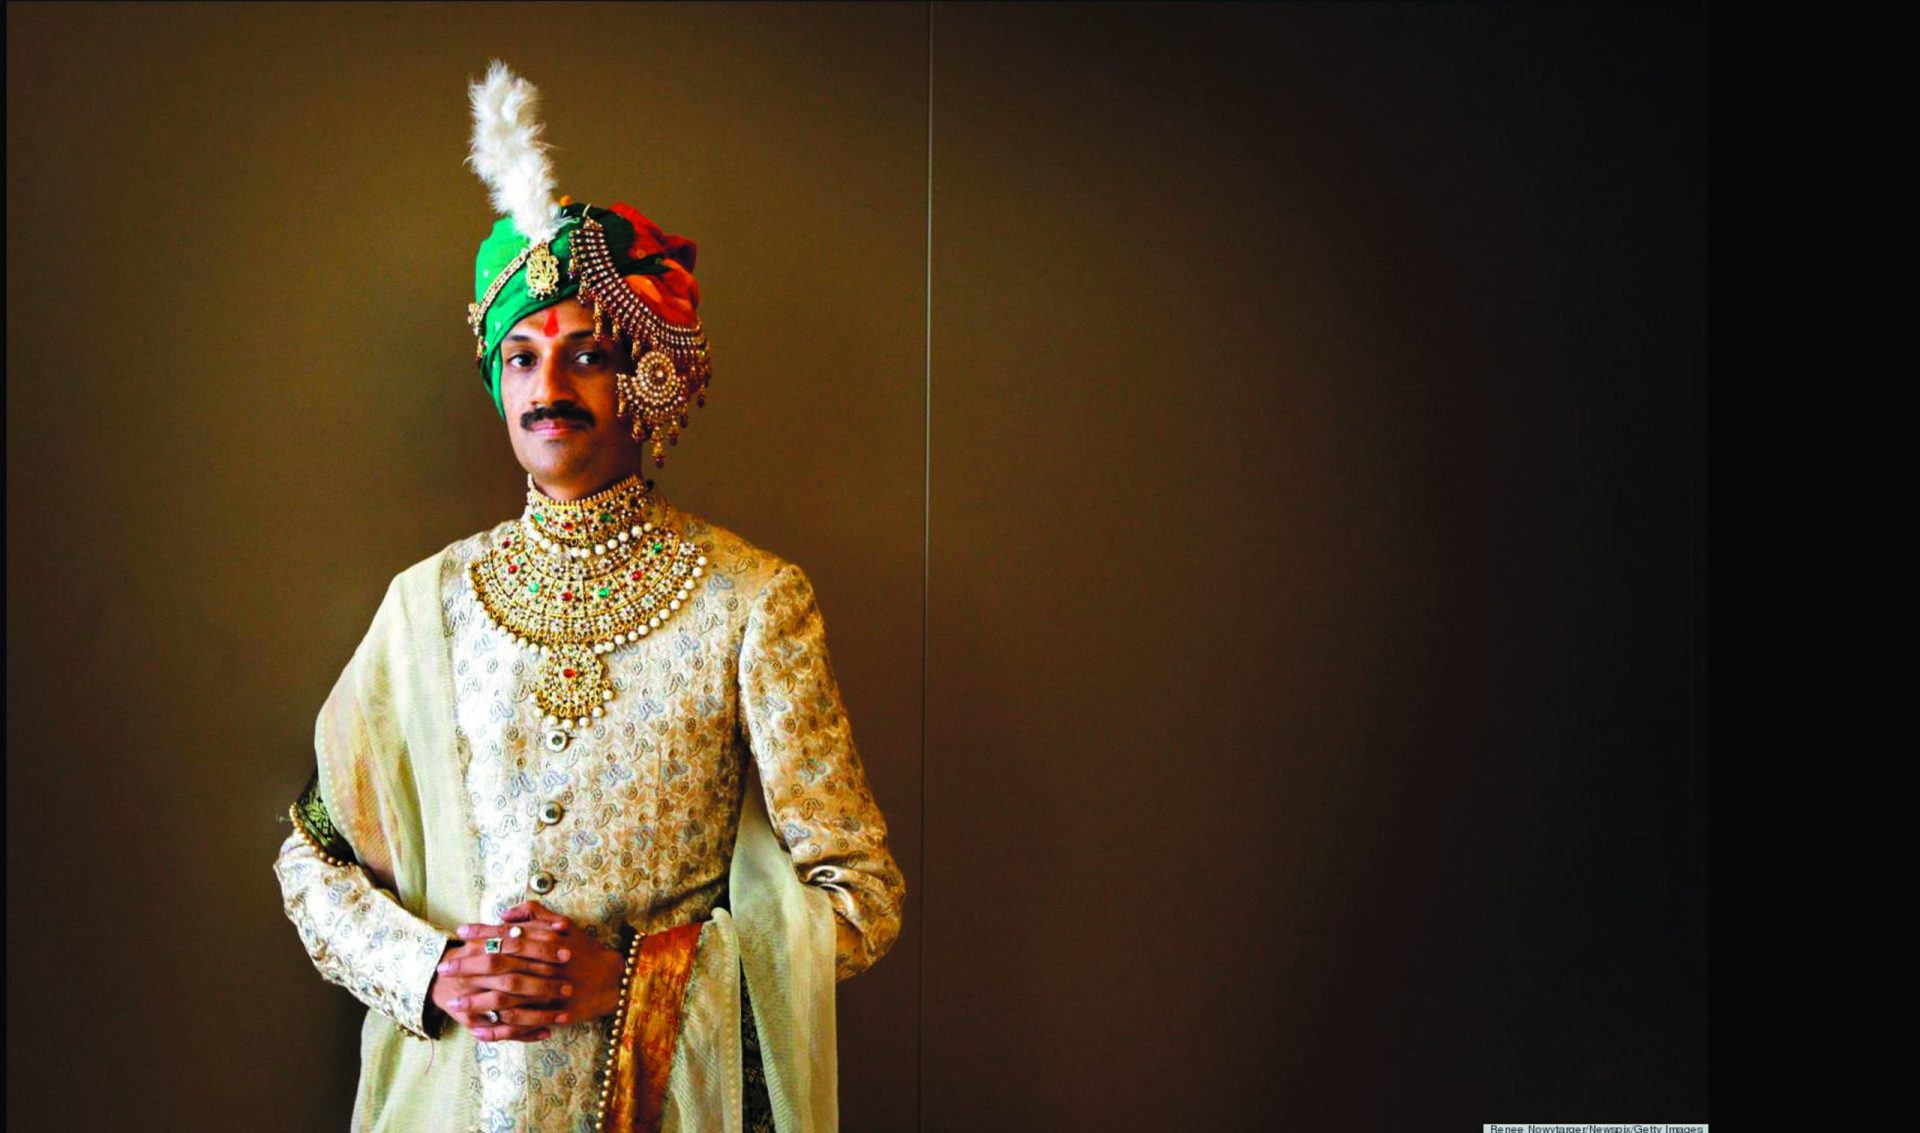 Manvendra Singh Gohil. O príncipe que saiu do armário num dos países mais homofóbicos do mundo